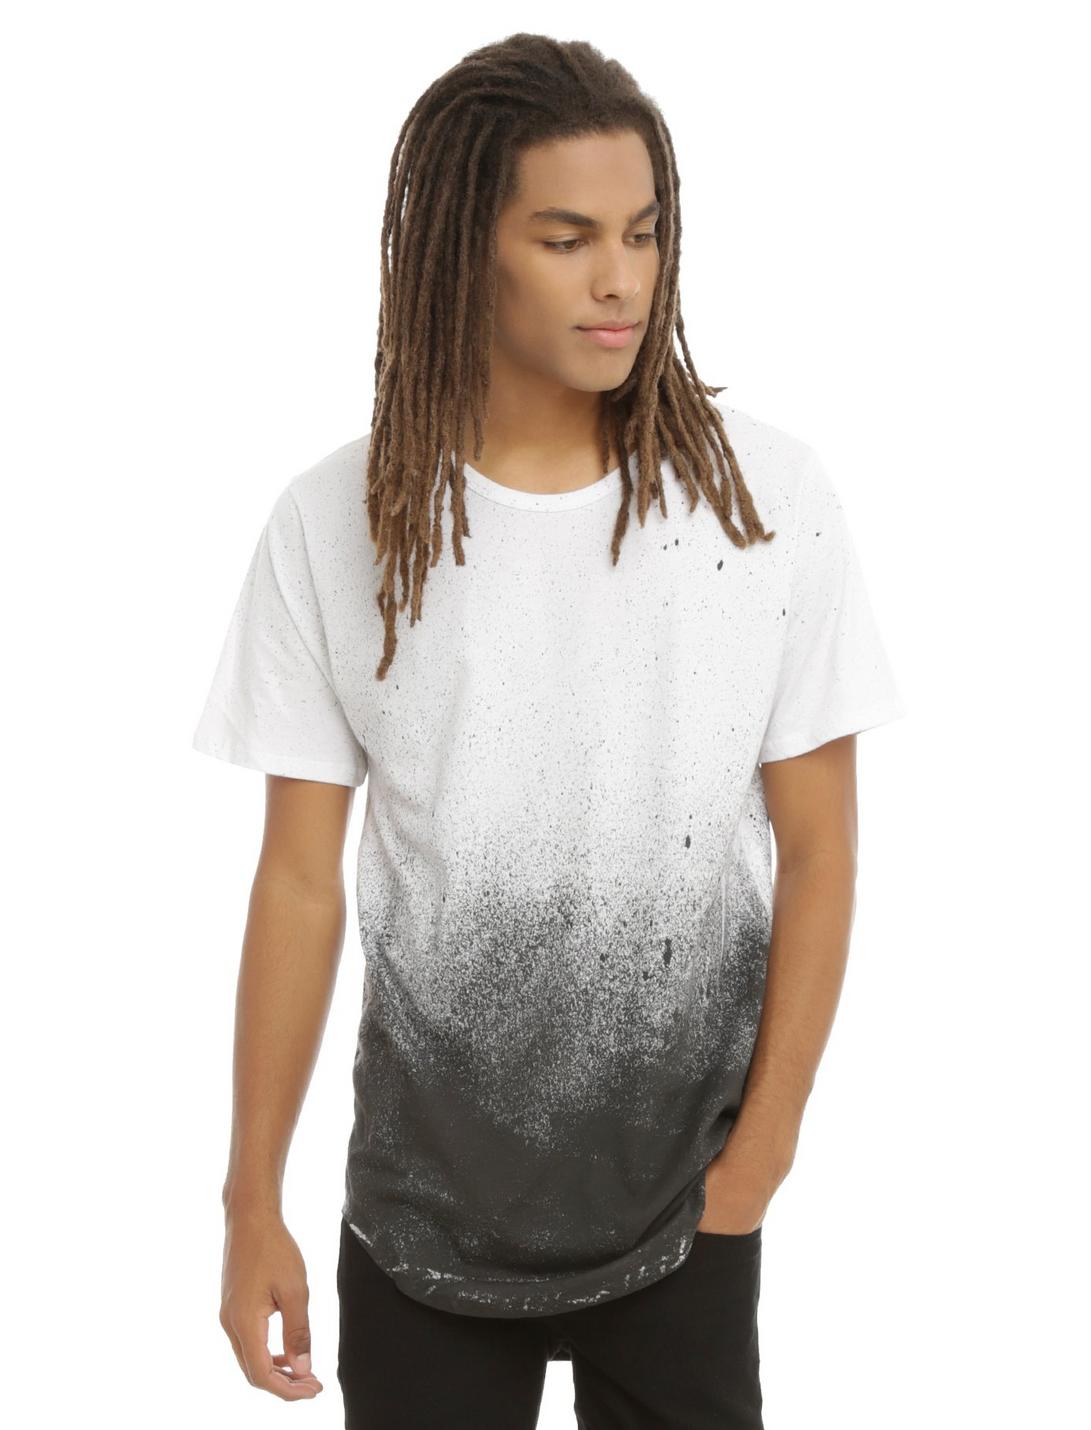 Kayden K Black And White Splatter Long Hem T-Shirt, WHITE, hi-res